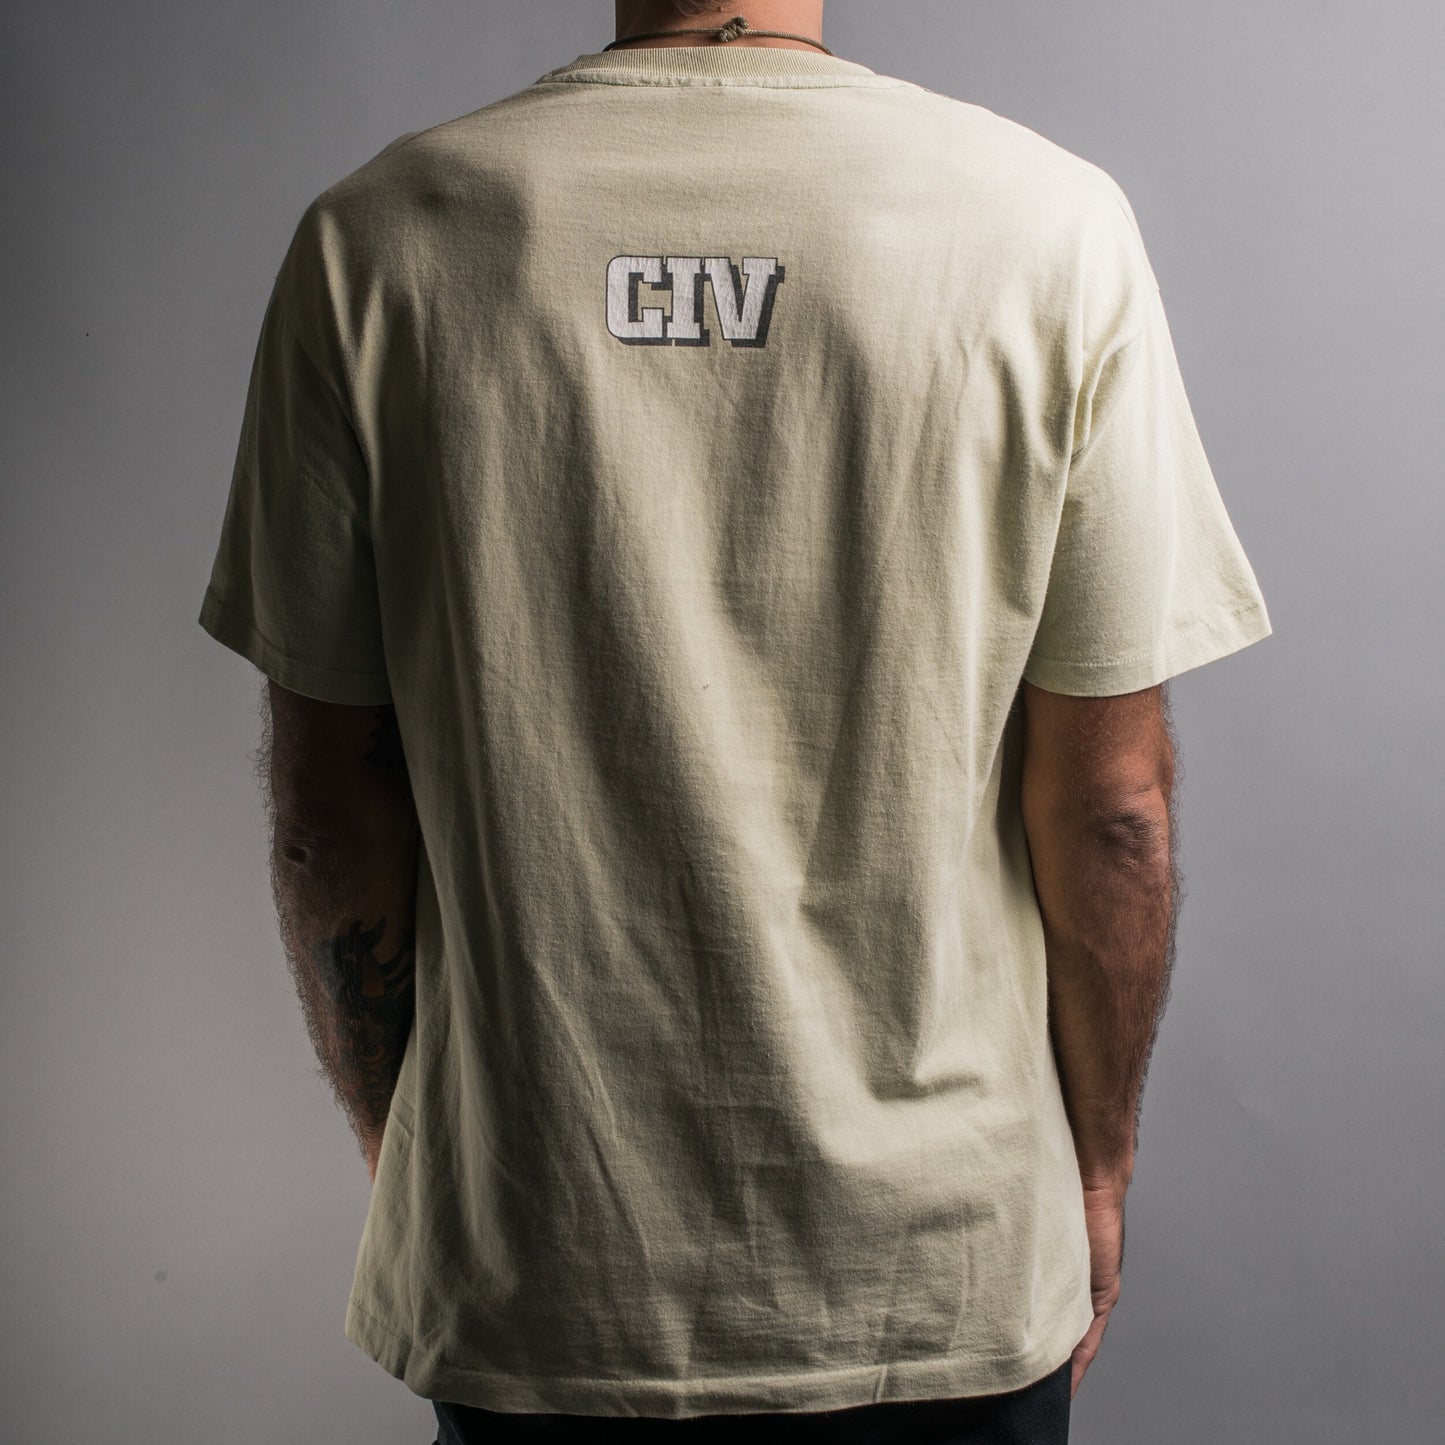 Vintage 1995 CIV T-Shirt